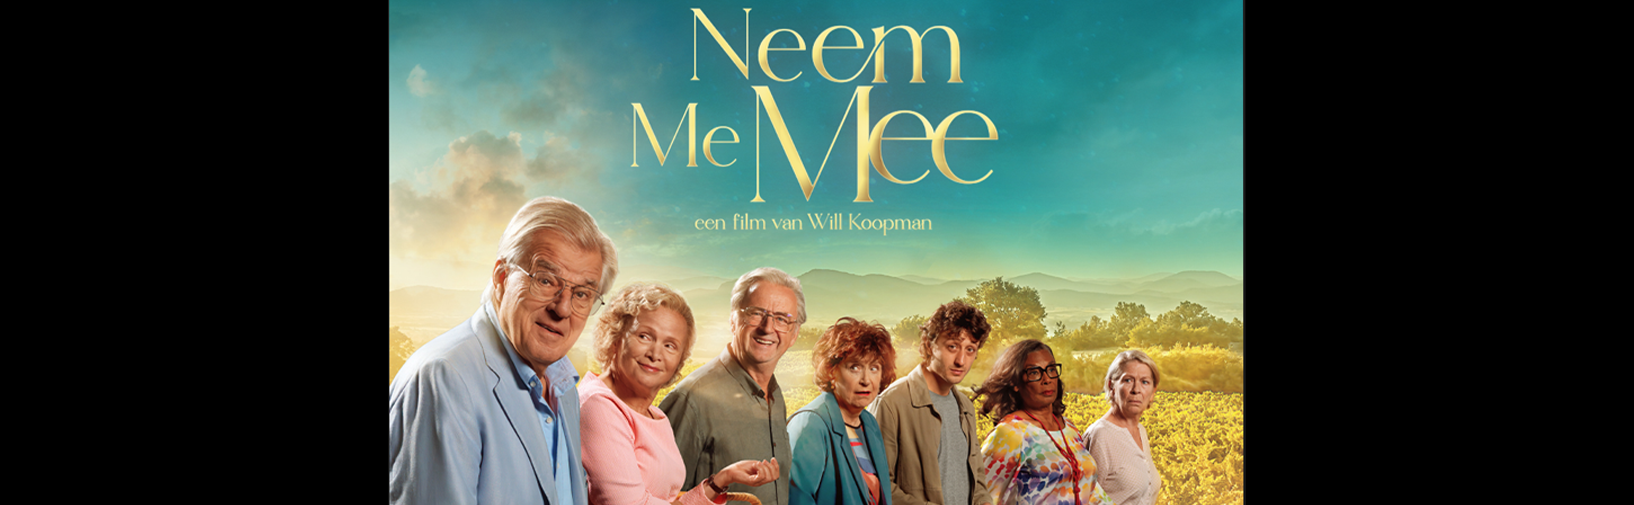 First footage of the Will Koopman movie Neem Me Mee hero image